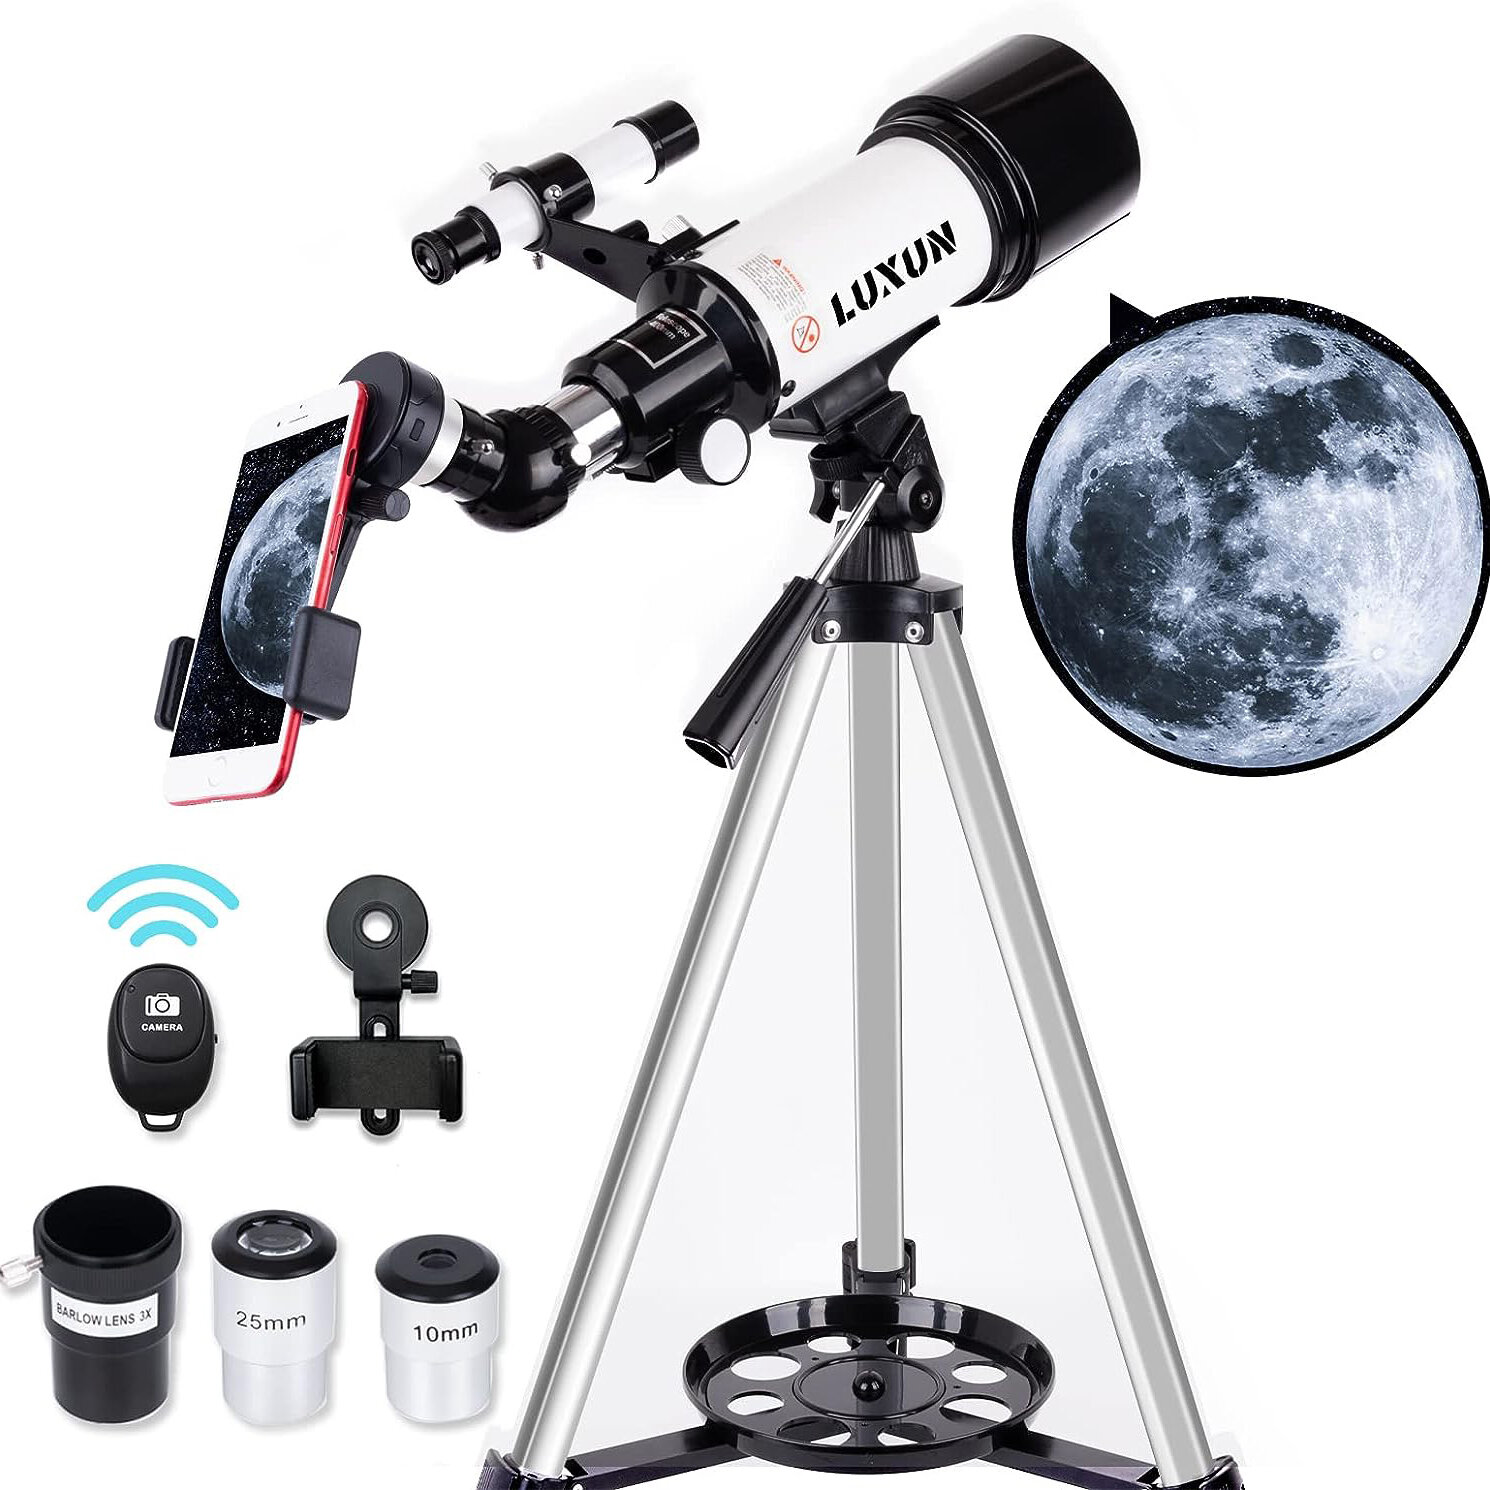 LUXUN teleszkóp az asztrofotós kezdőknek,gyerekeknek és felnőtteknek,70mm átmérőjű 400mm-es fókuszhosszú asztrofotós hordozható teleszkóp - utazó teleszkóp telefon adapterrel vezeték nélküli bluetooth